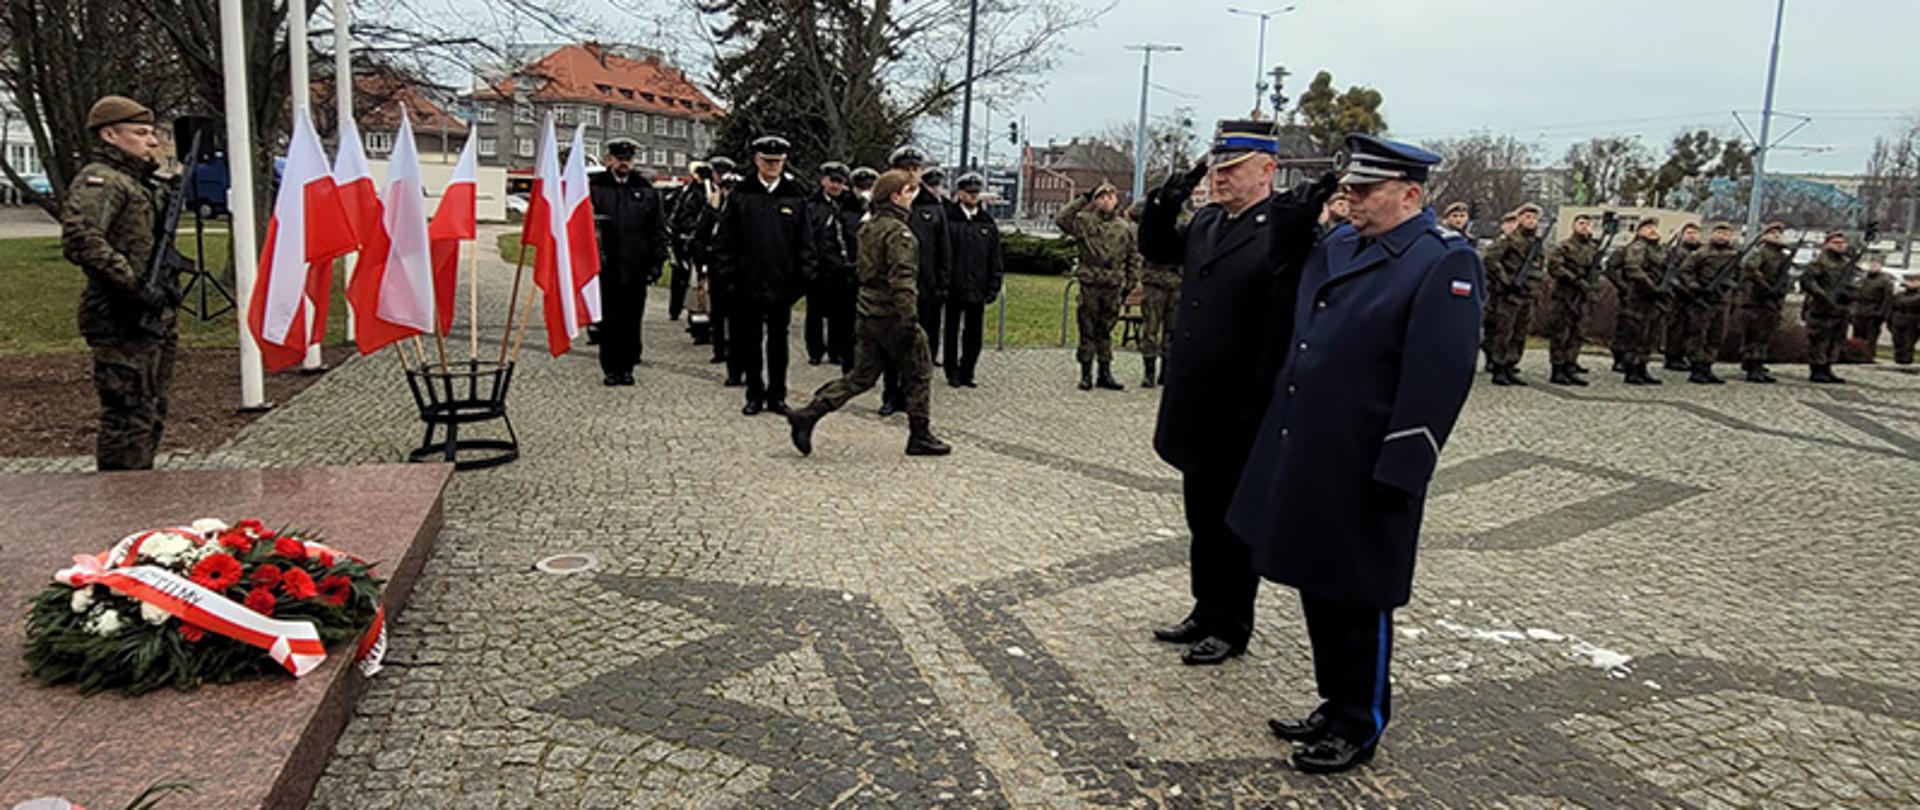 Funkcjonariusze Państwowej Straży Pożarnej oraz Policji stojąc obok siebie oddają honor obok stoją przedstawiciele Sił Zbrojnych Polski. 